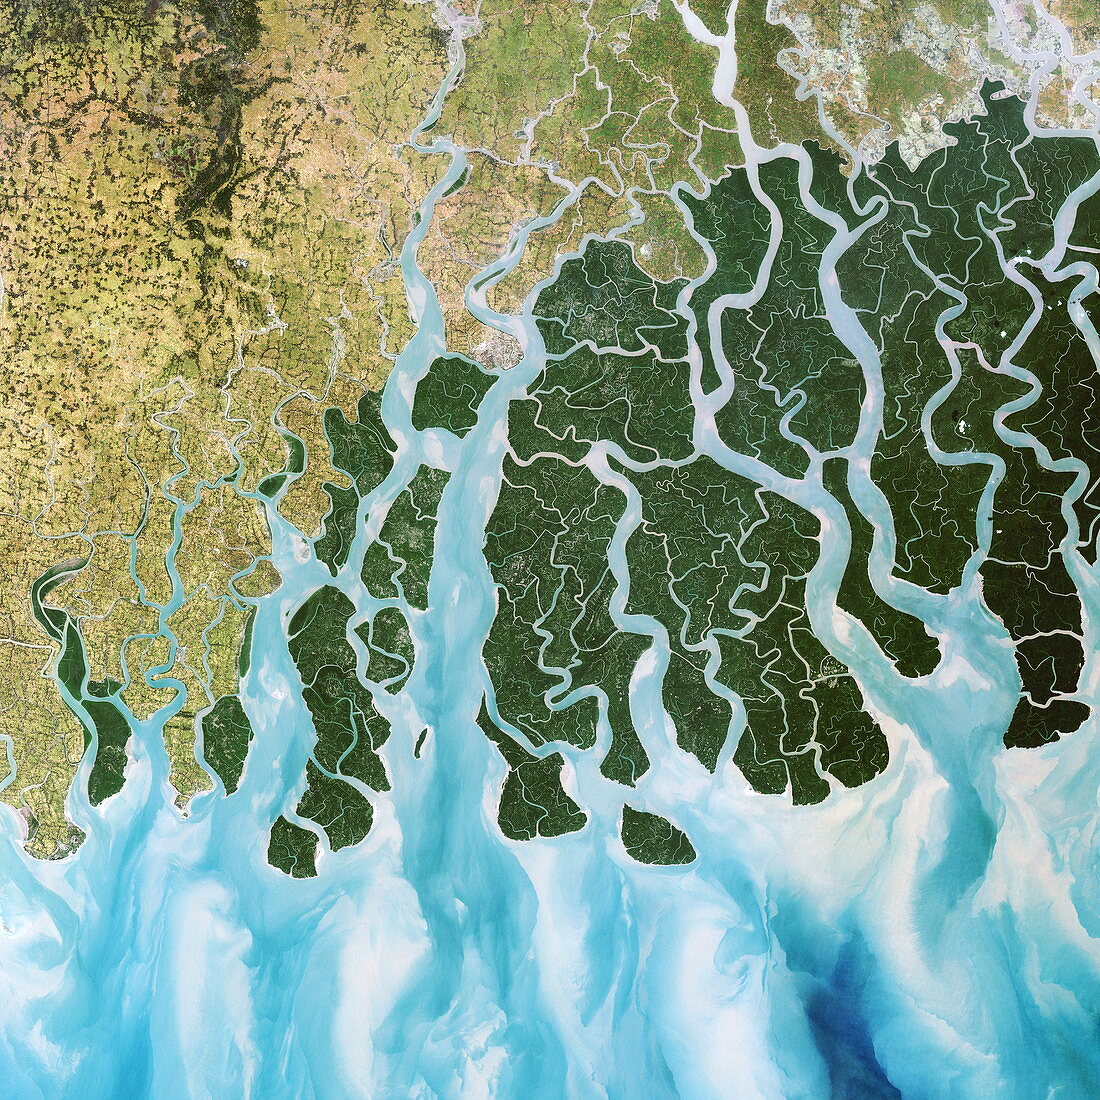 Ganges River delta,India